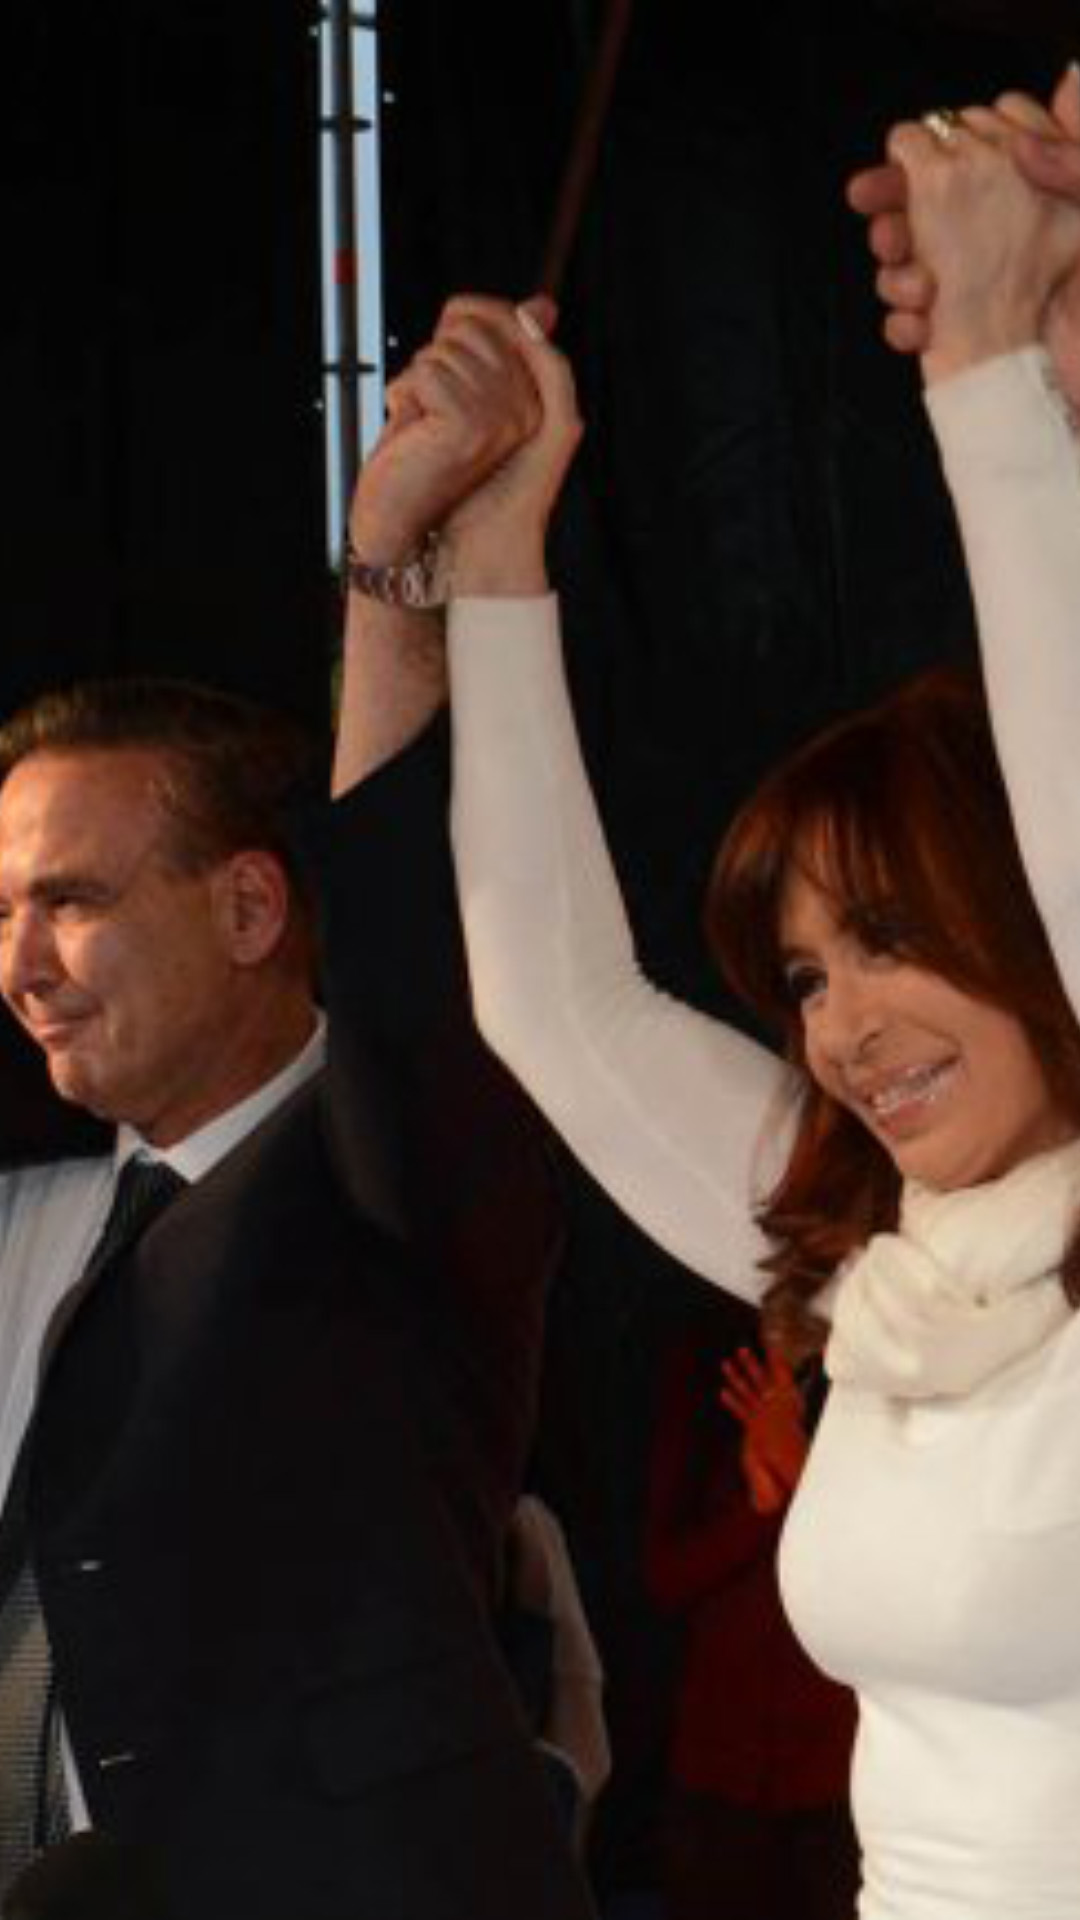 Inauguración de la Universidad Nacional de Río Negro. La entonces Presidenta de la Nación, Cristina Fernandez de Kirchner, con los brazos en alto tomada de las manos junto a otros políticos.